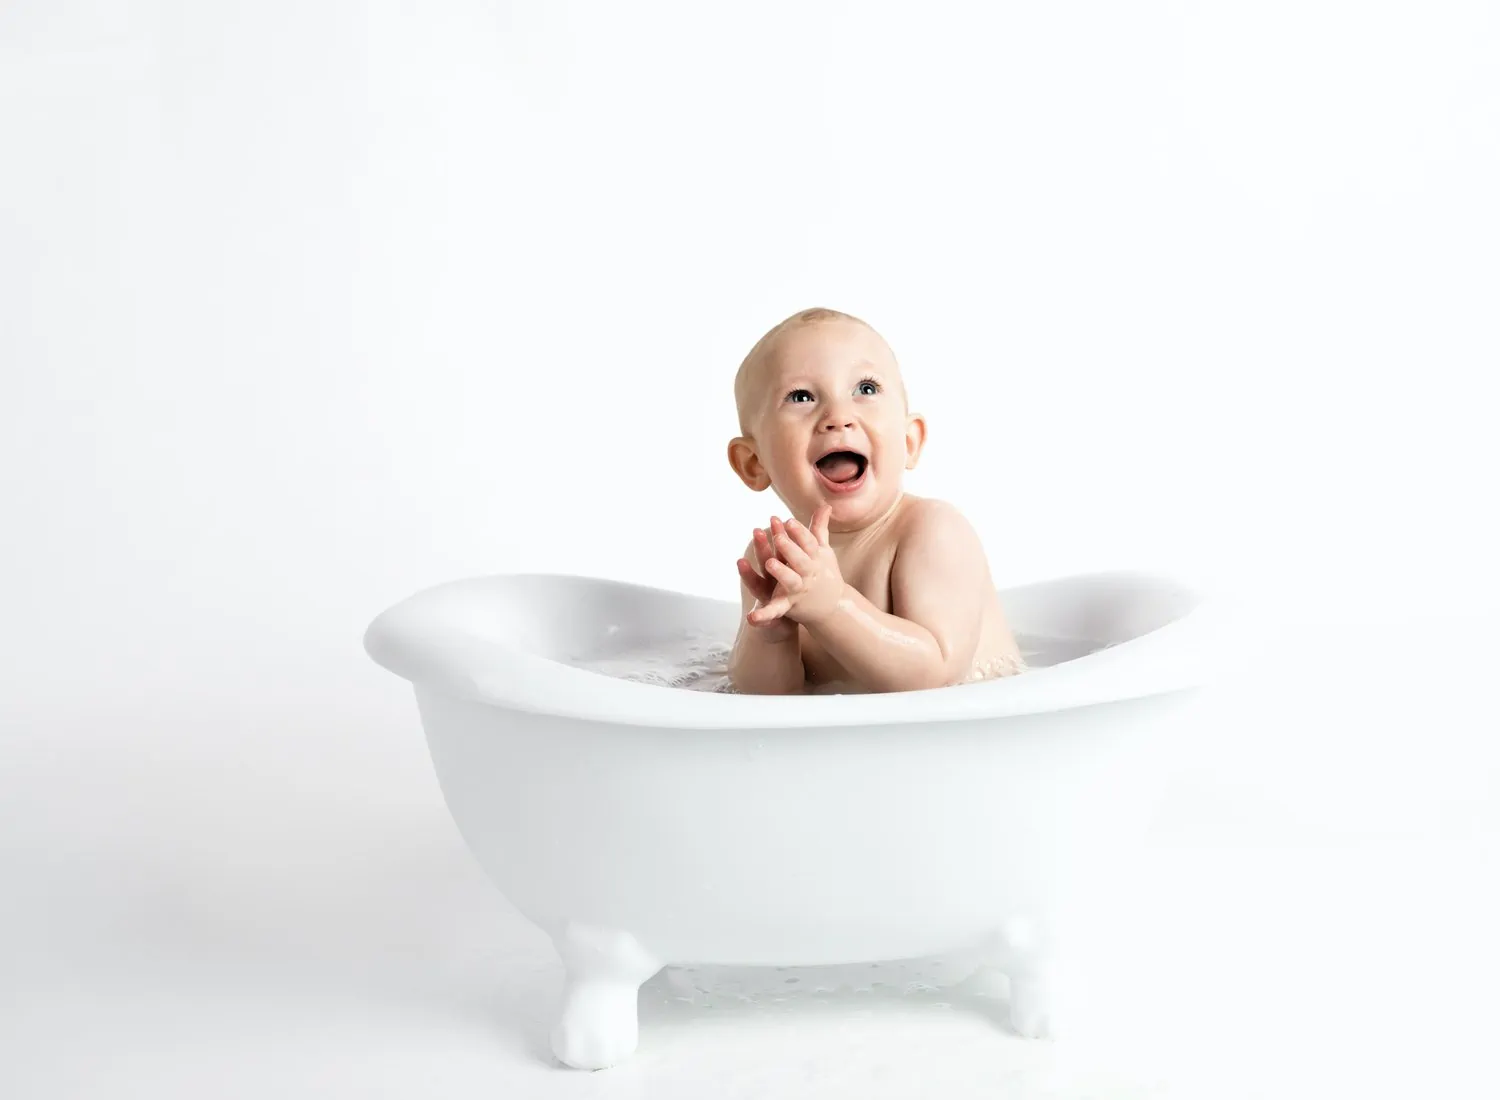 original baby photos bathtub